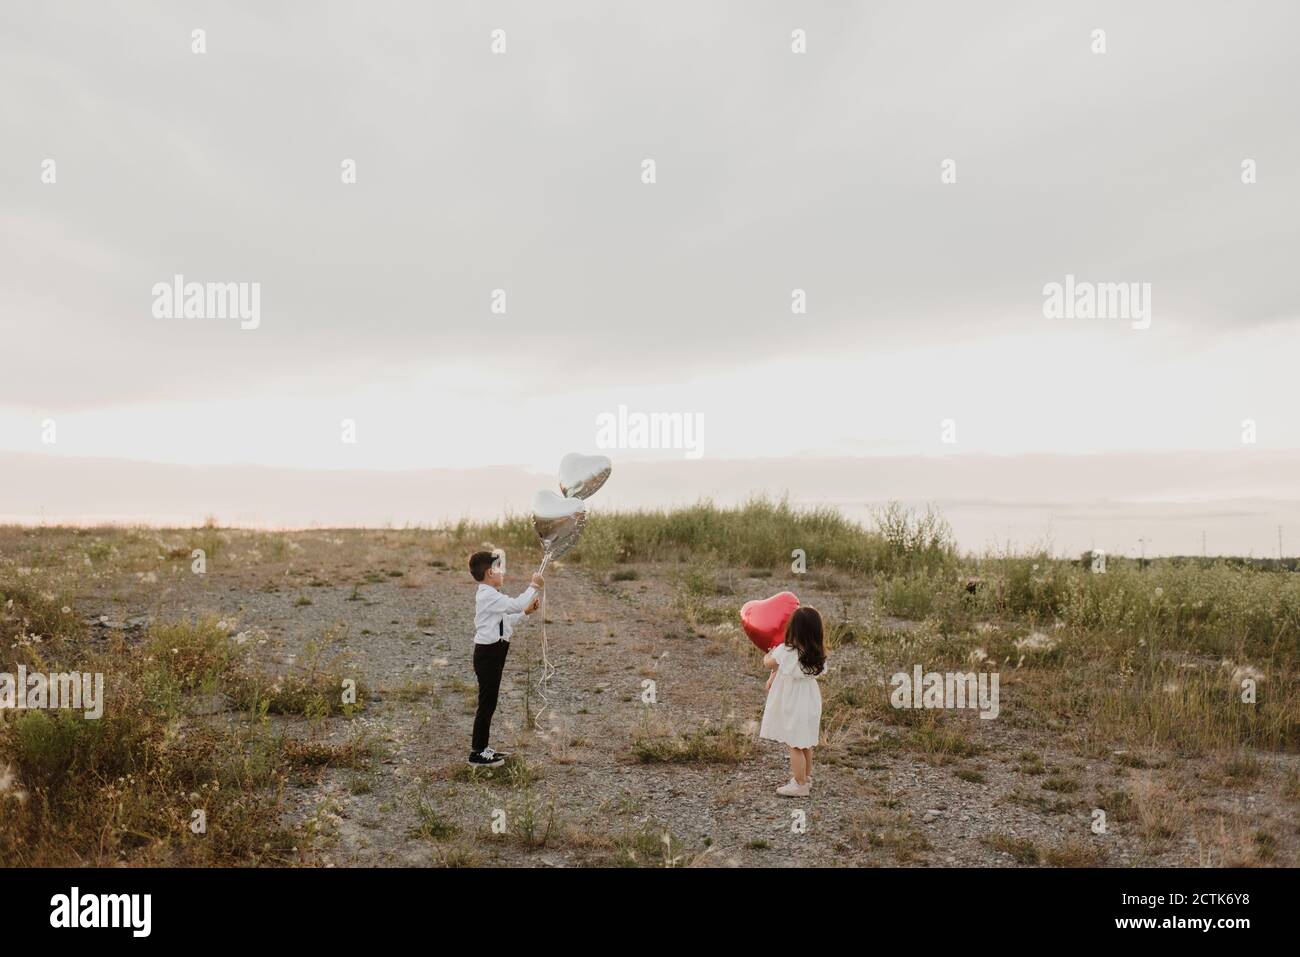 Geschwister mit einem herzförmigen Ballon, der im Feld gegen den Himmel steht Stockfoto